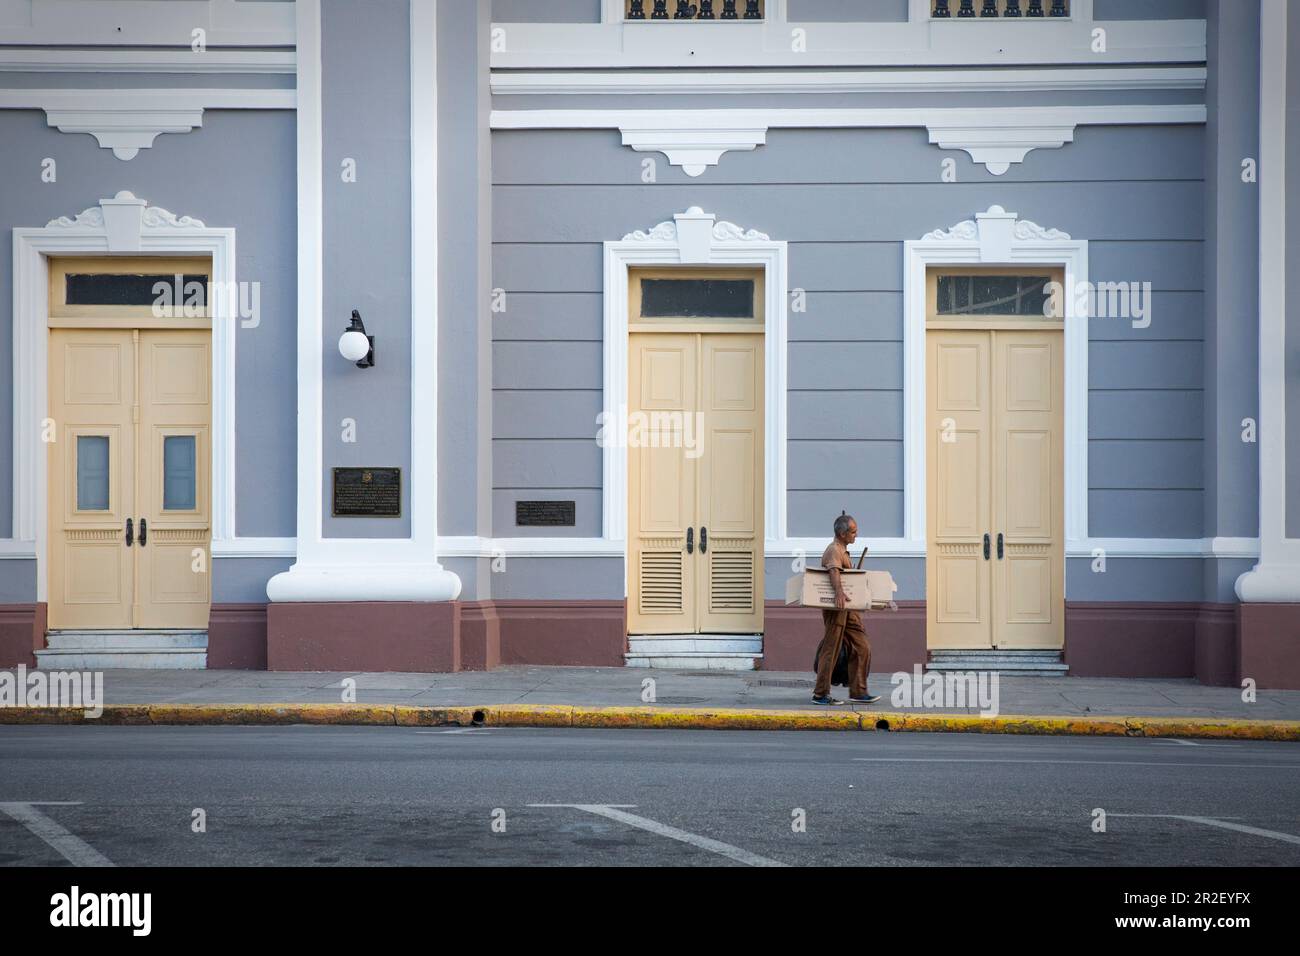 Man in front of house facade of Palacio de Gobierno in Cienfuegos, Cuba Stock Photo